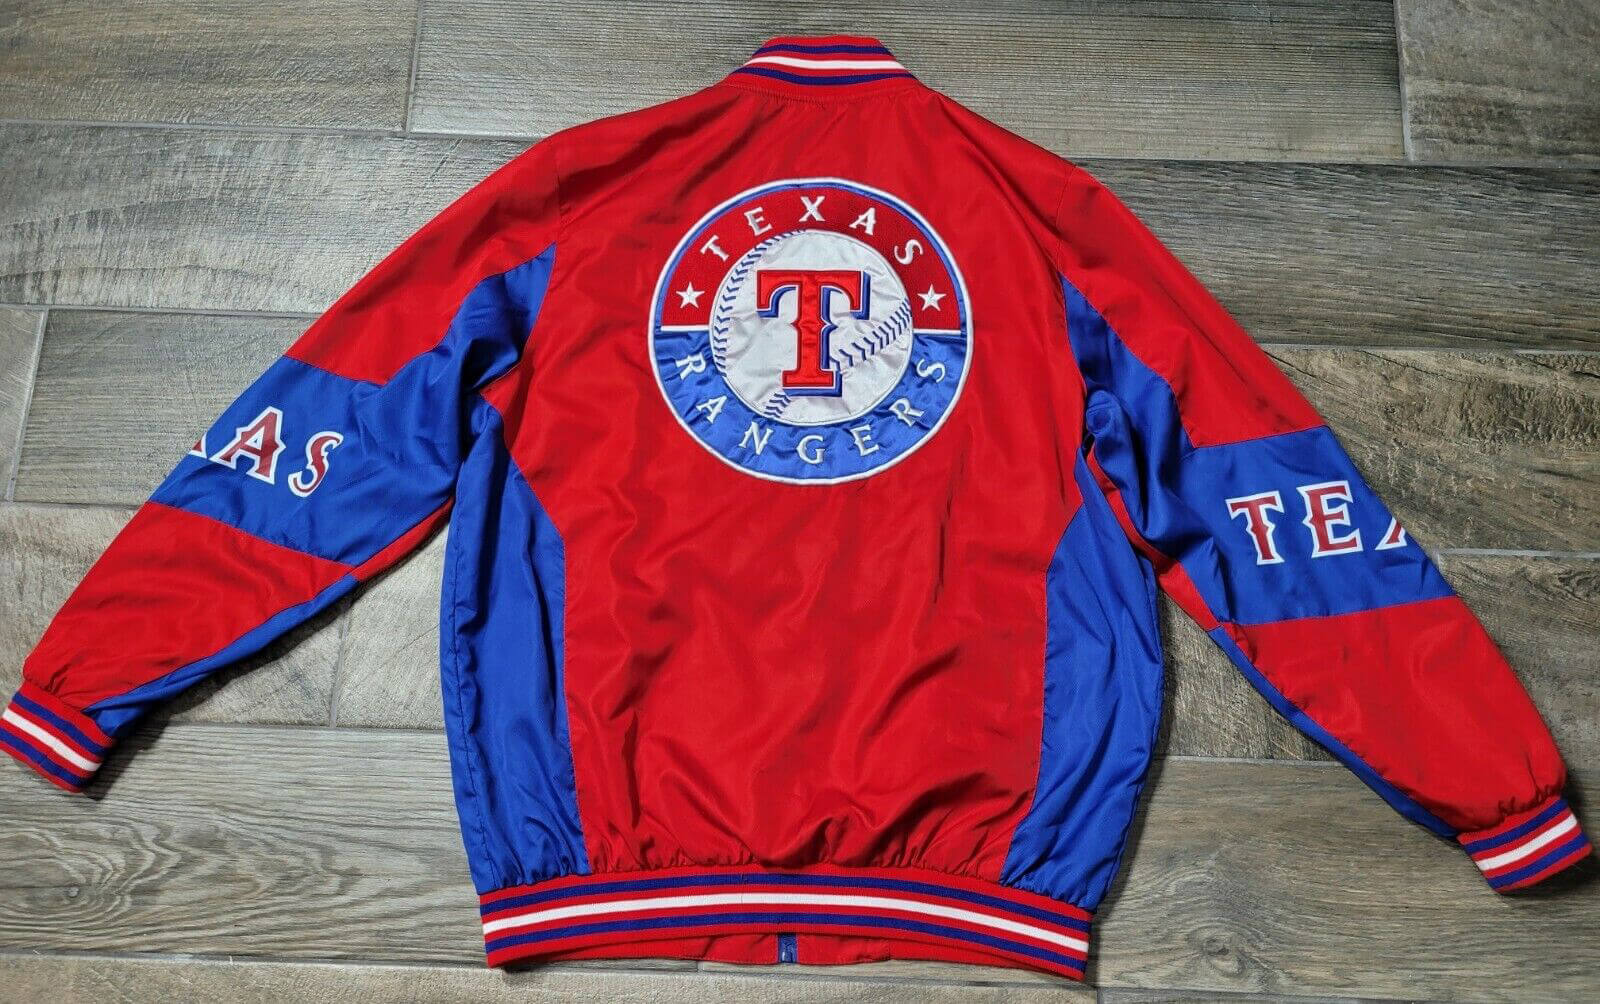 Size Large Vintage NY Rangers Jacket